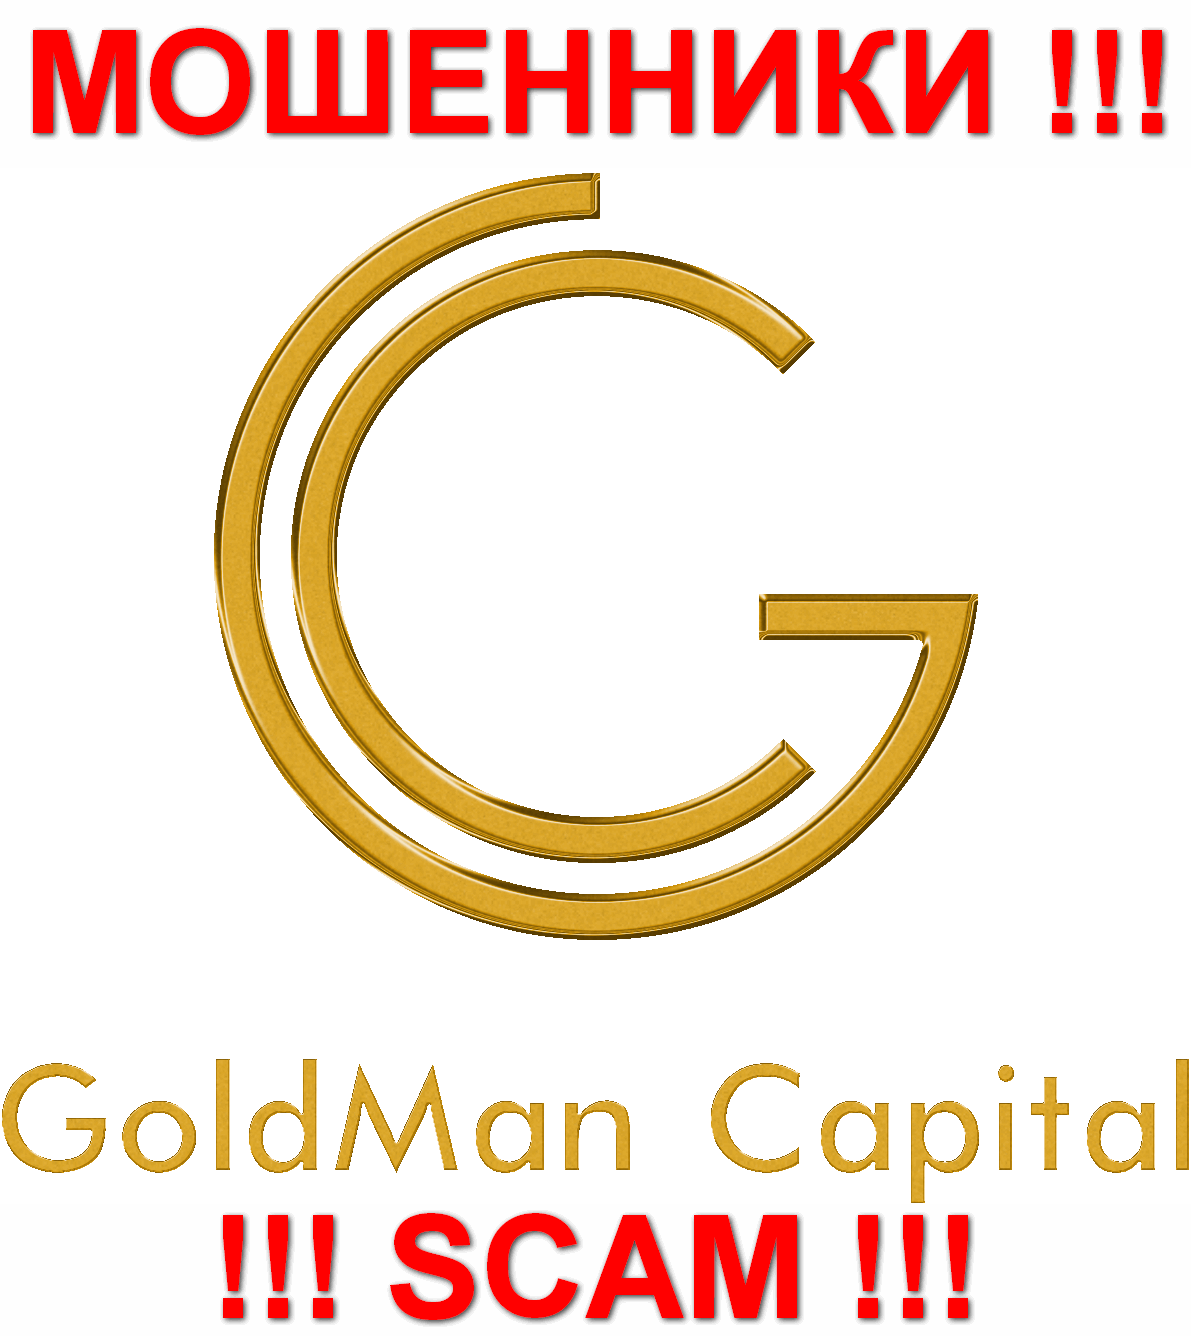 GoldmanCapital - МОШЕННИКИ !!! SCAM !!!